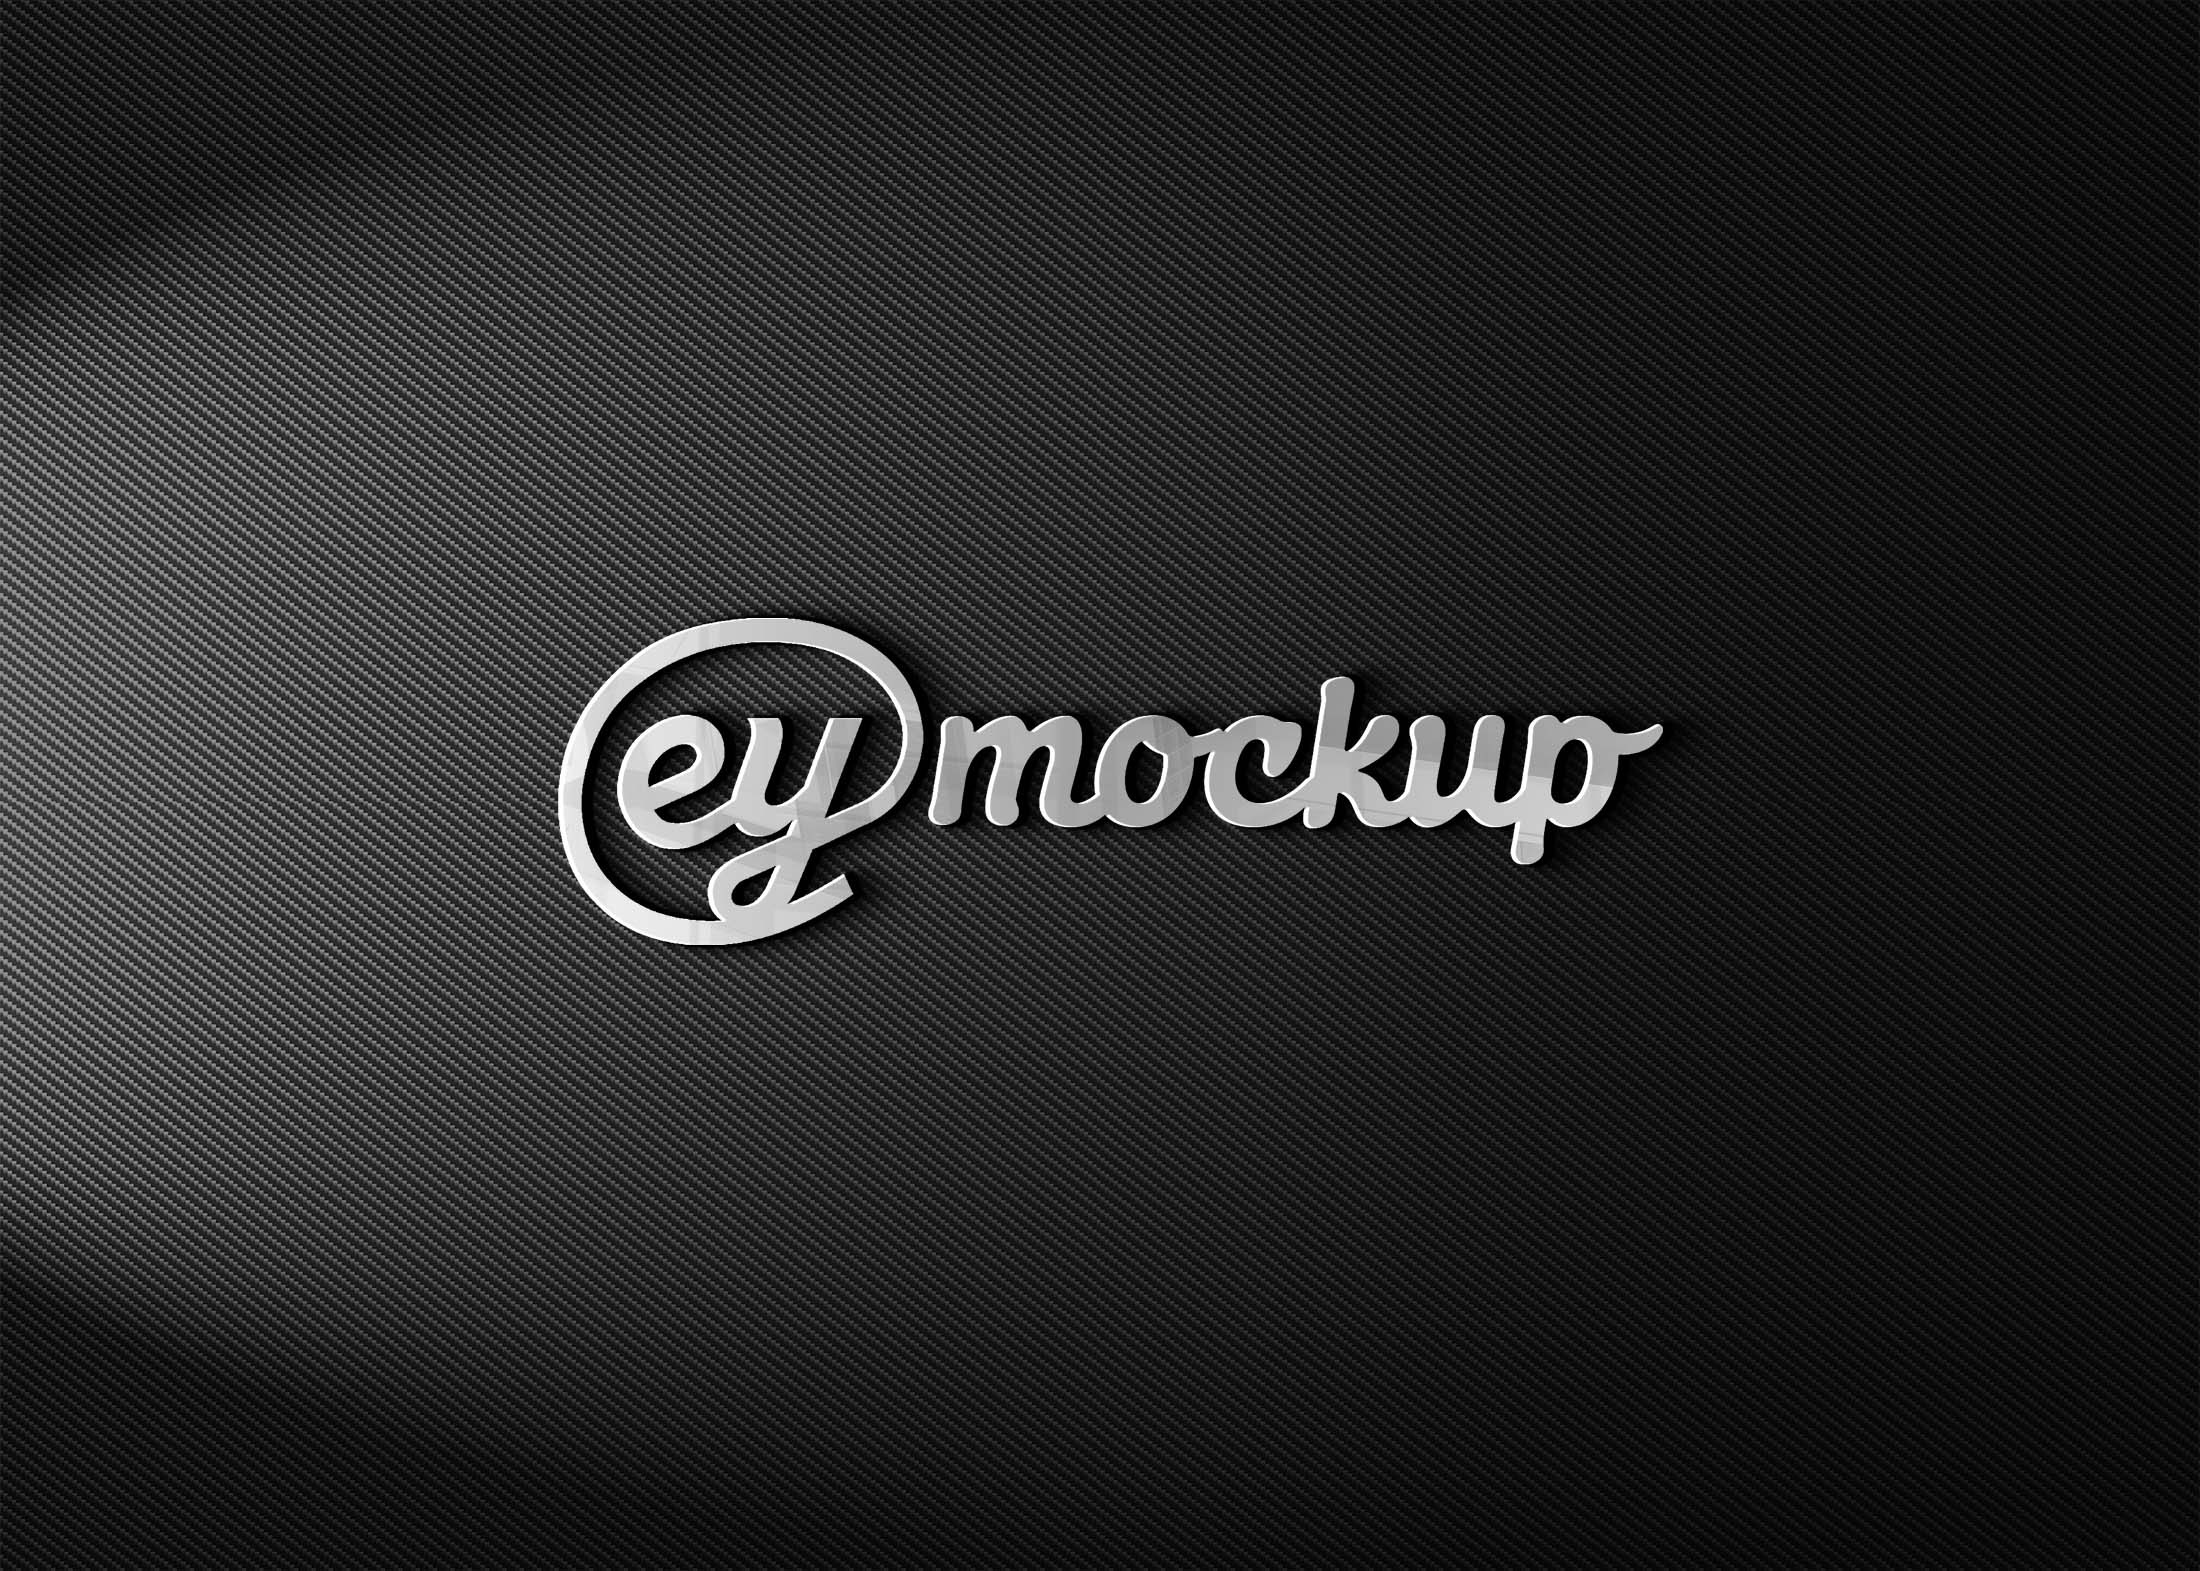 Eymockup Steel Logo Mockup